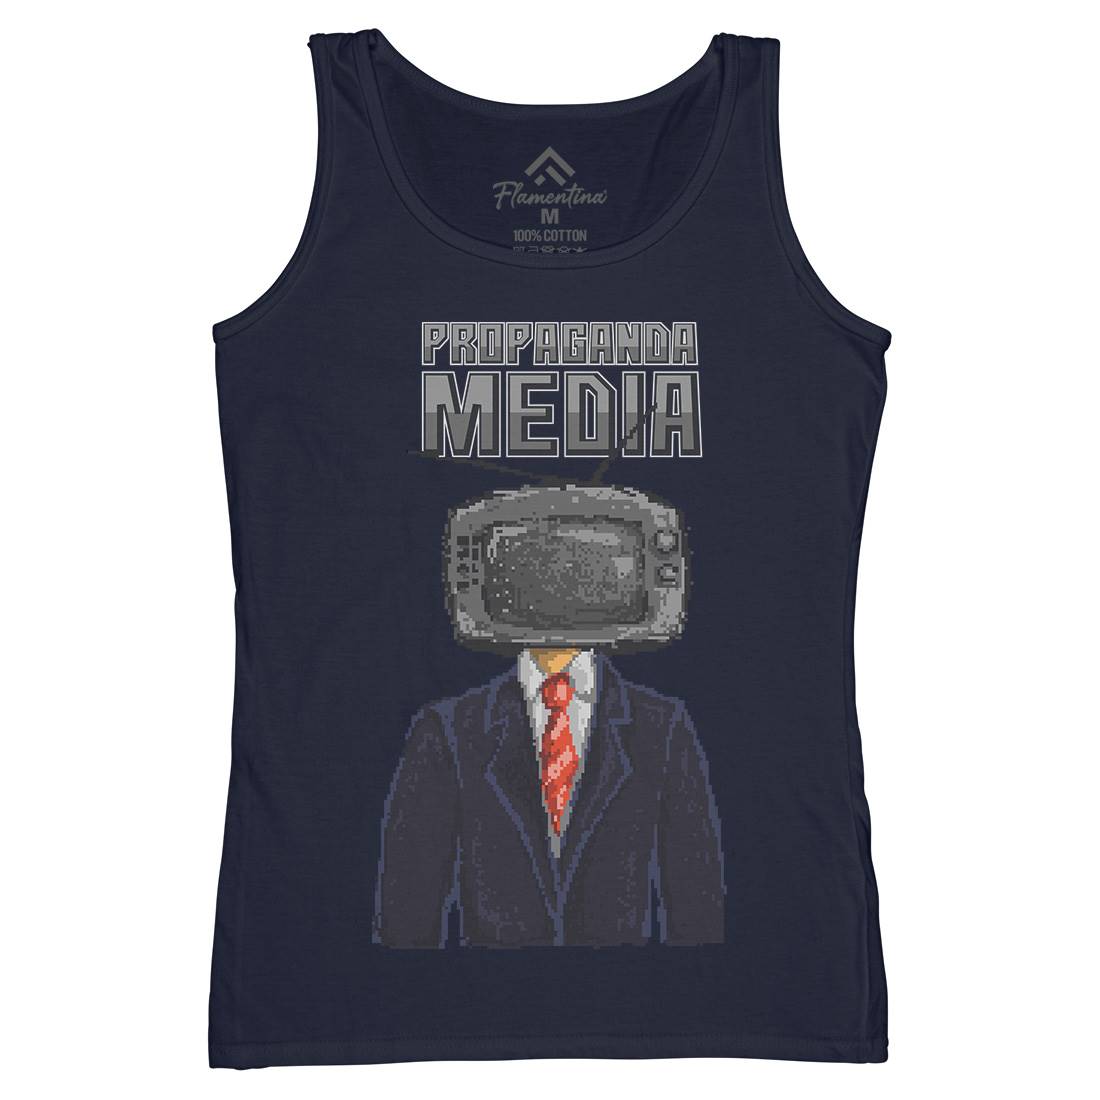 Propaganda Womens Organic Tank Top Vest Illuminati B948